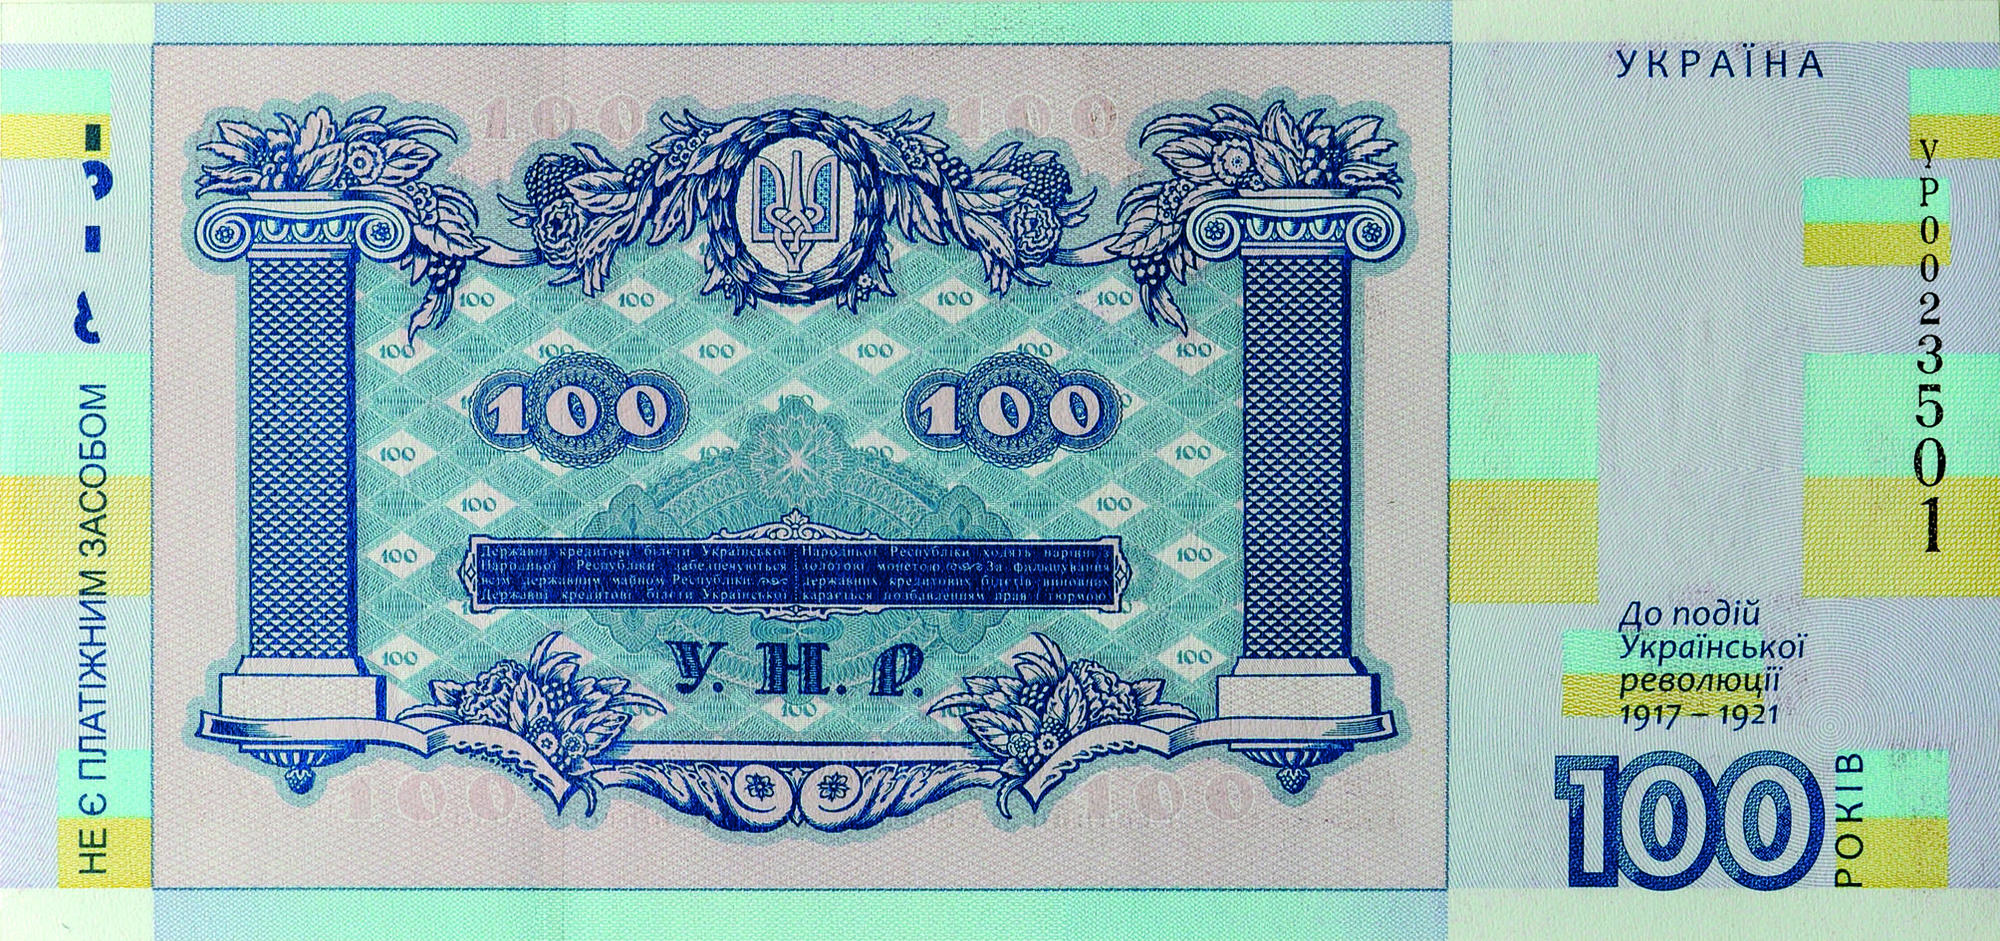 Сегодня НБУ выпускает новую банкноту, правда рассчитаться ей украинцы не смогут 1